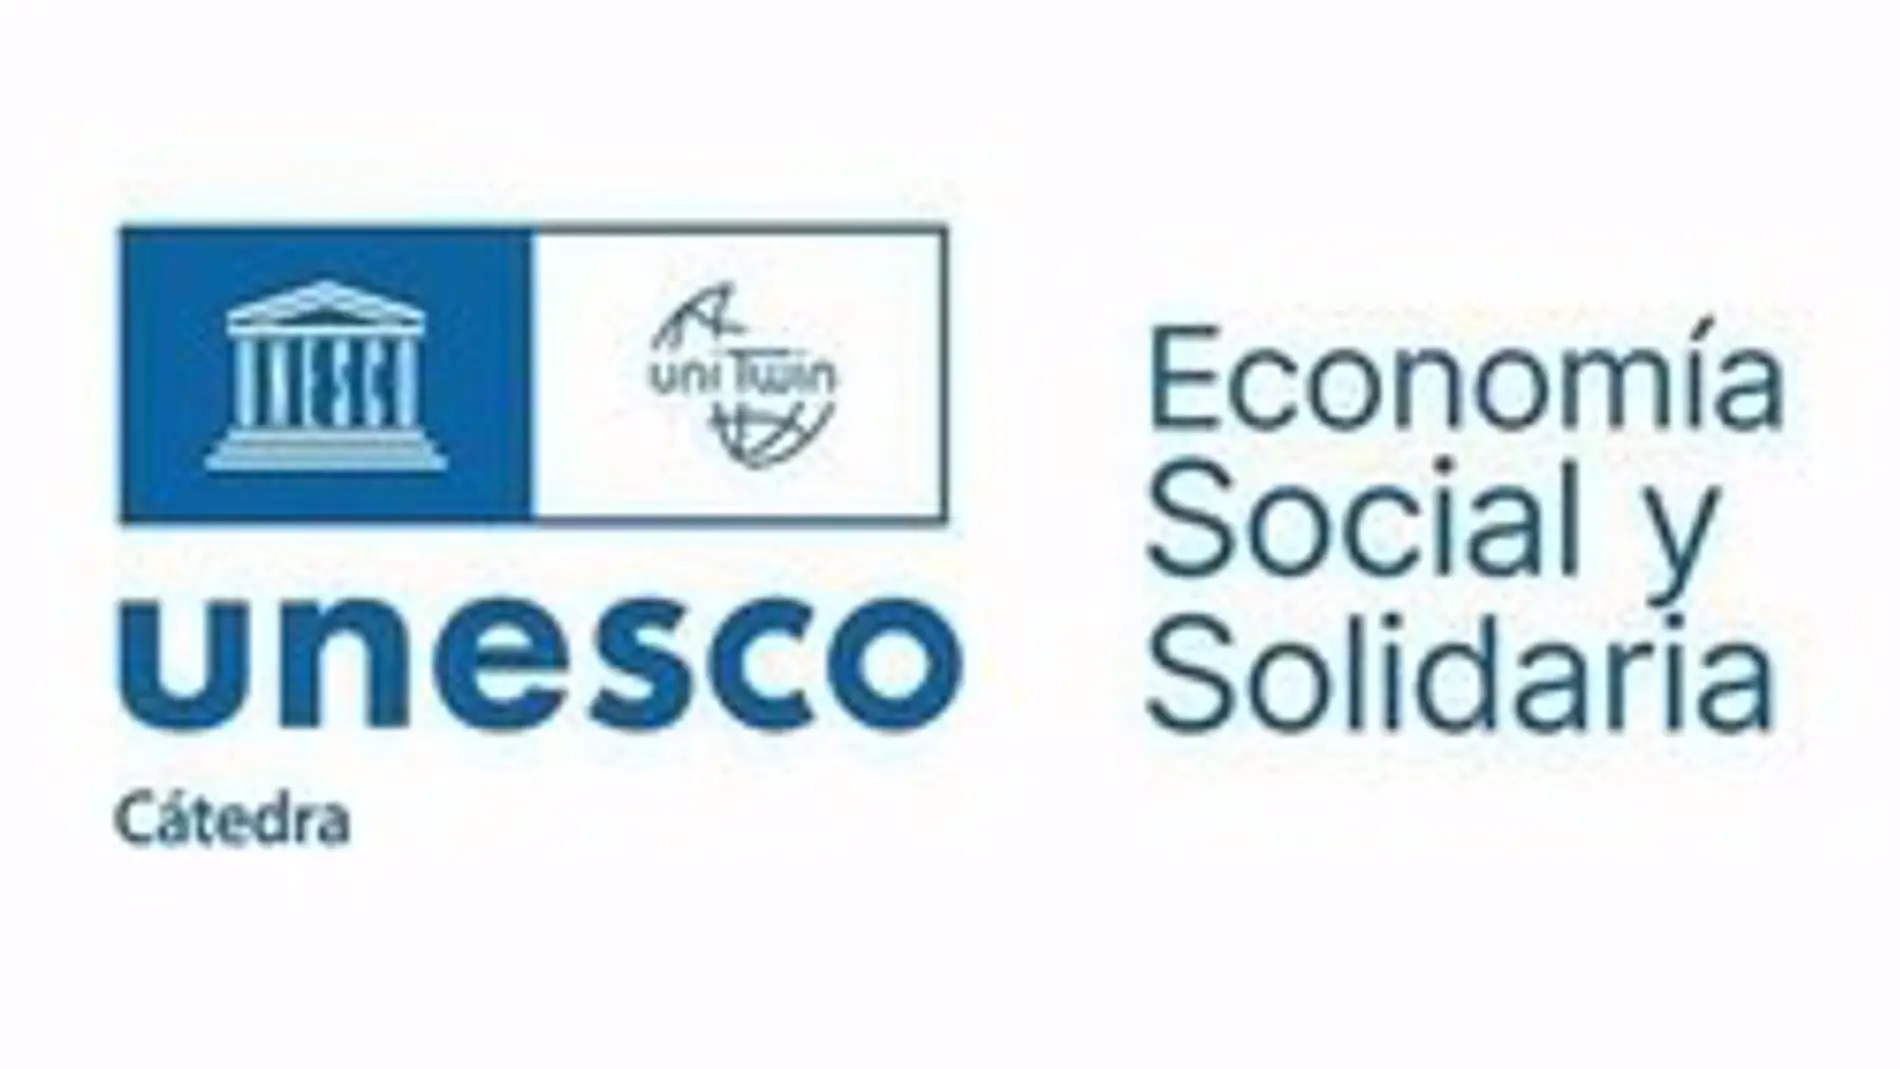 La Universidad de Extremadura se adhiere a la Cátedra Unesco de Economía Social